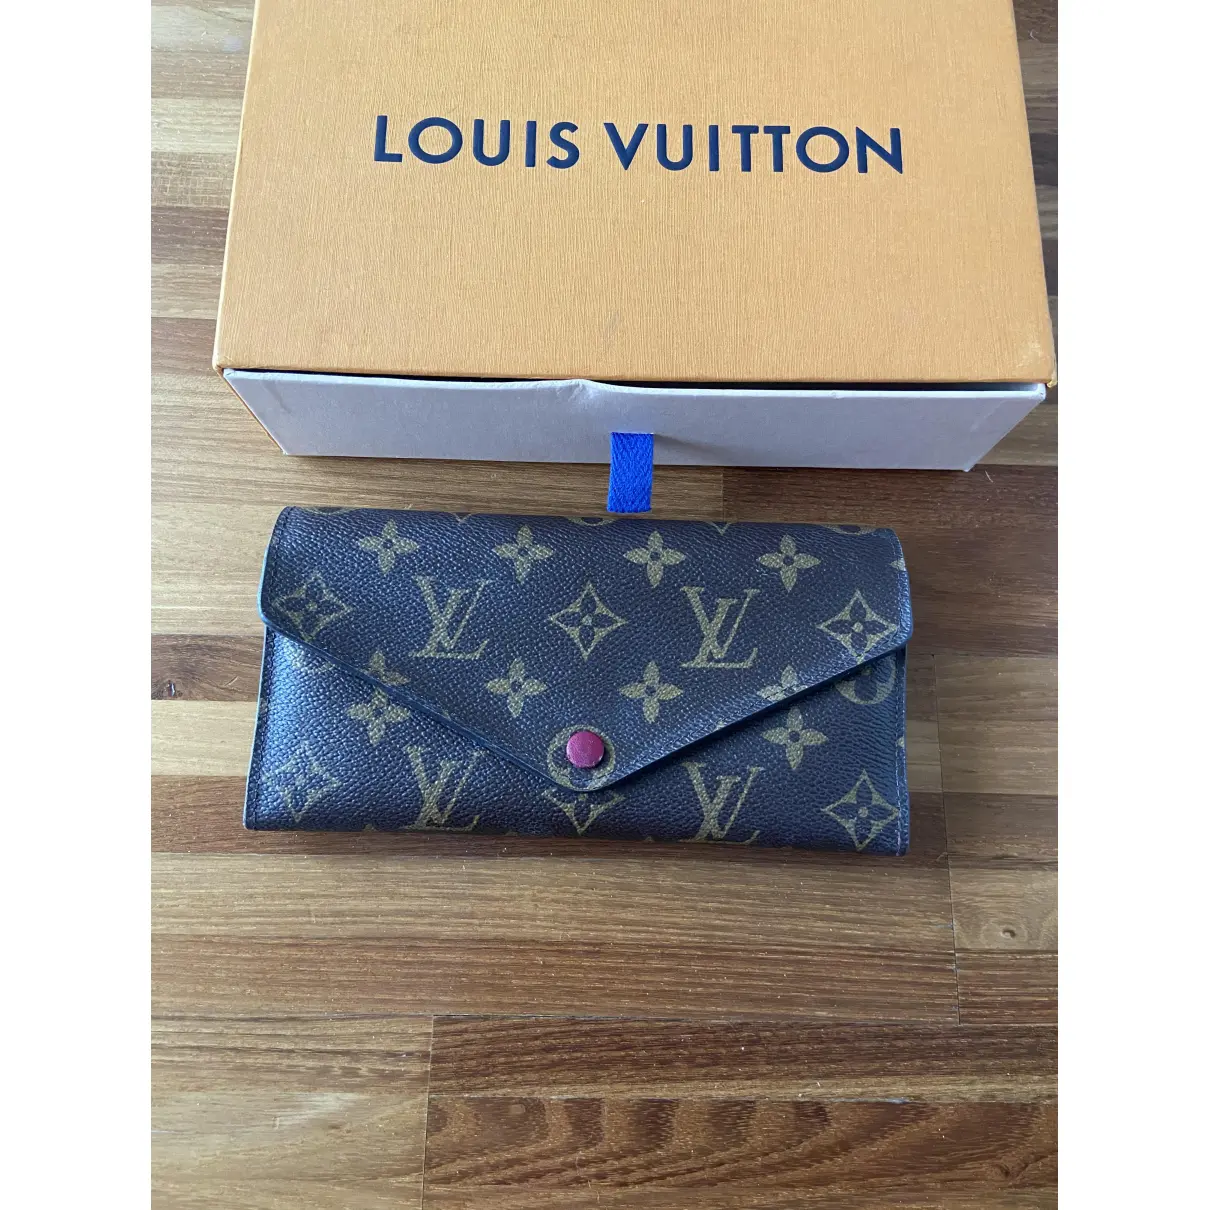 Buy Louis Vuitton Joséphine cloth wallet online